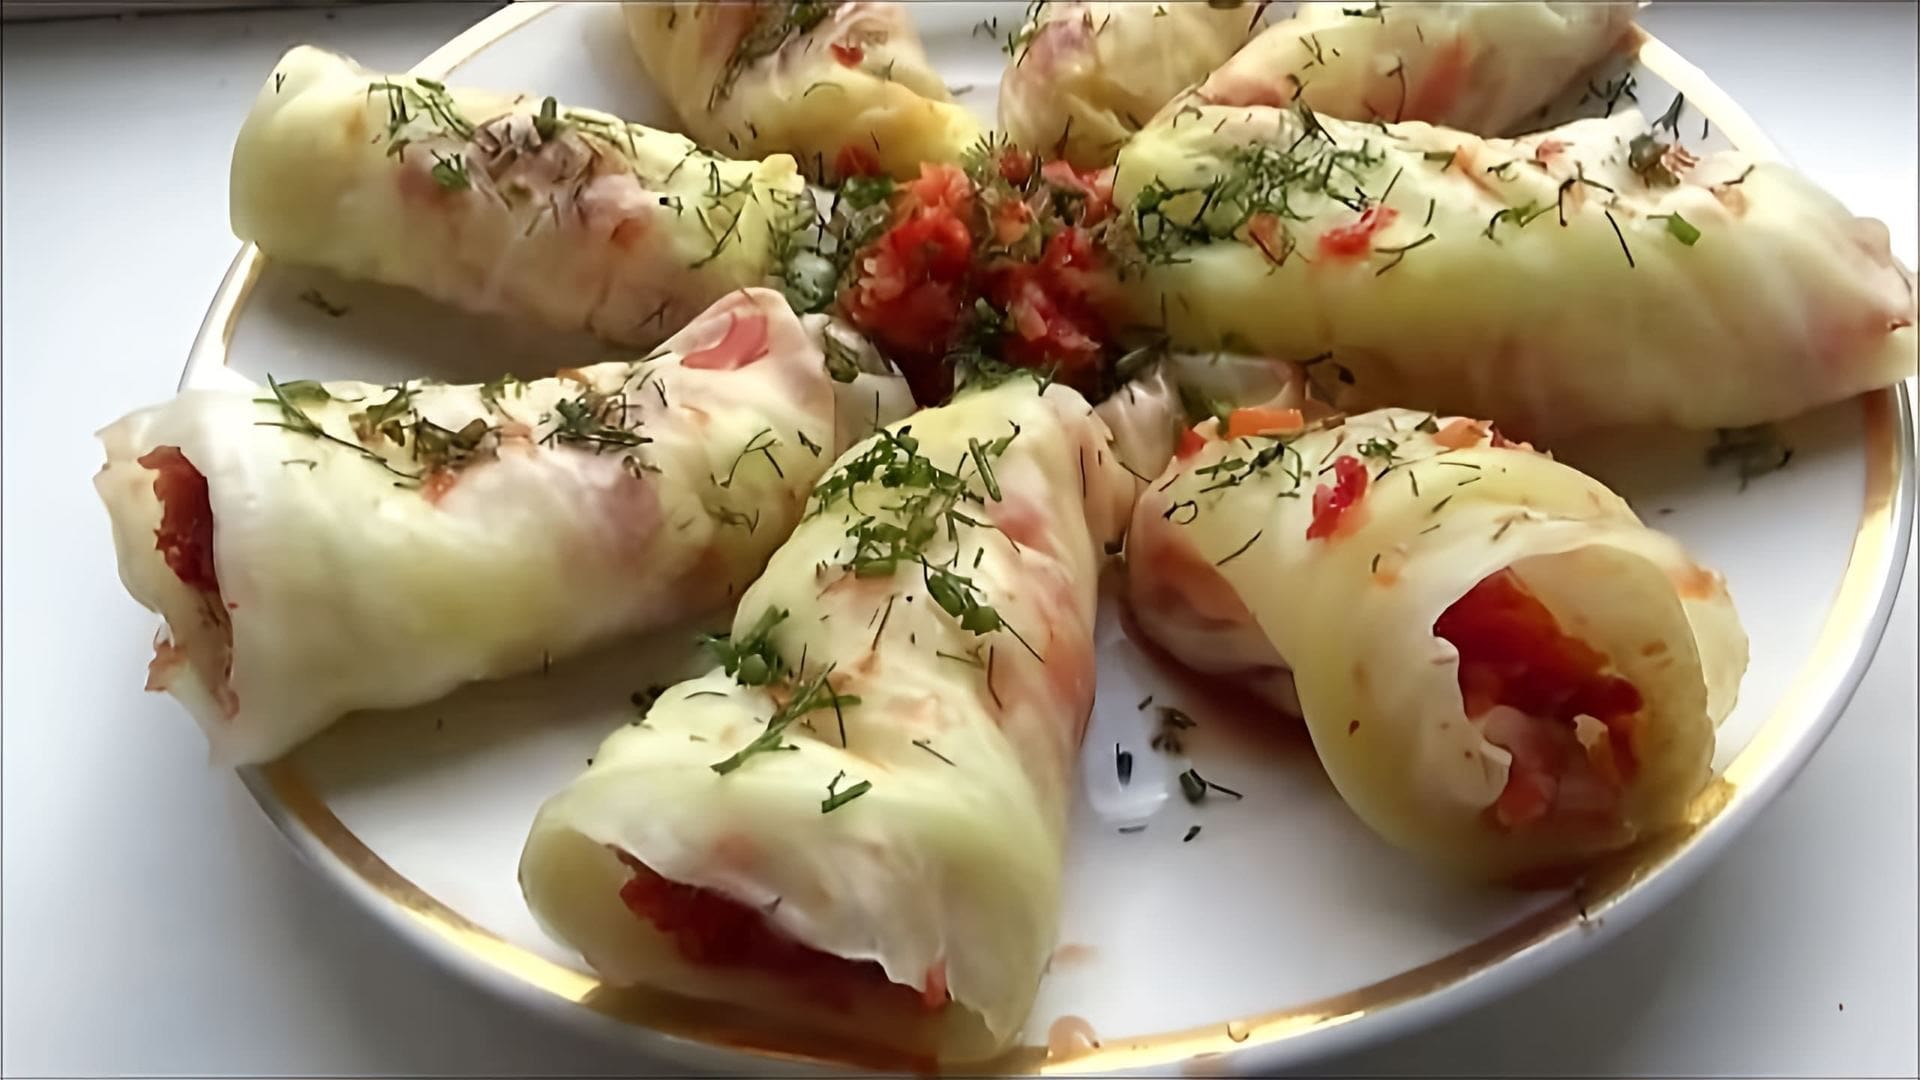 В этом видео демонстрируется процесс приготовления корейской закуски "Чимча" из обычной капусты